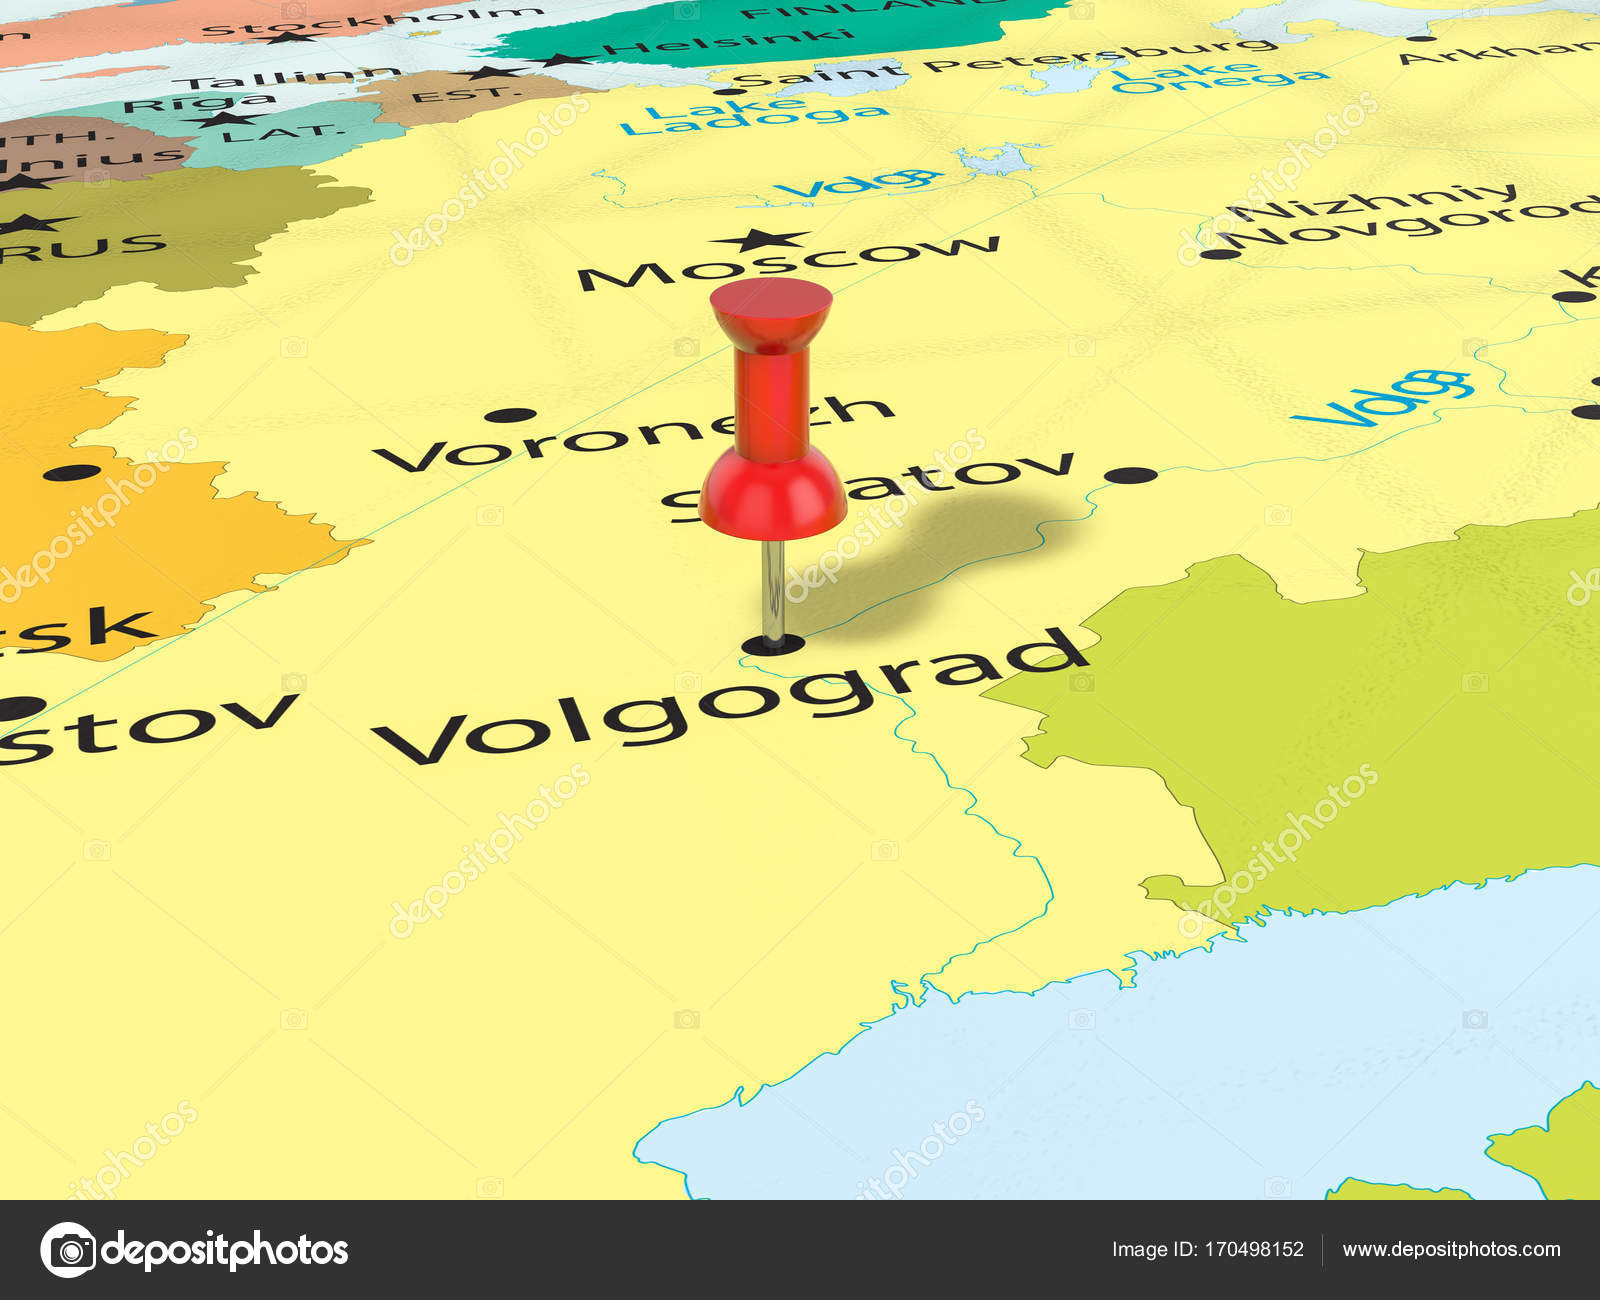 volgograd karta Kartnålen på Volgograd karta — Stockfotografi © julydfg #170498152 volgograd karta